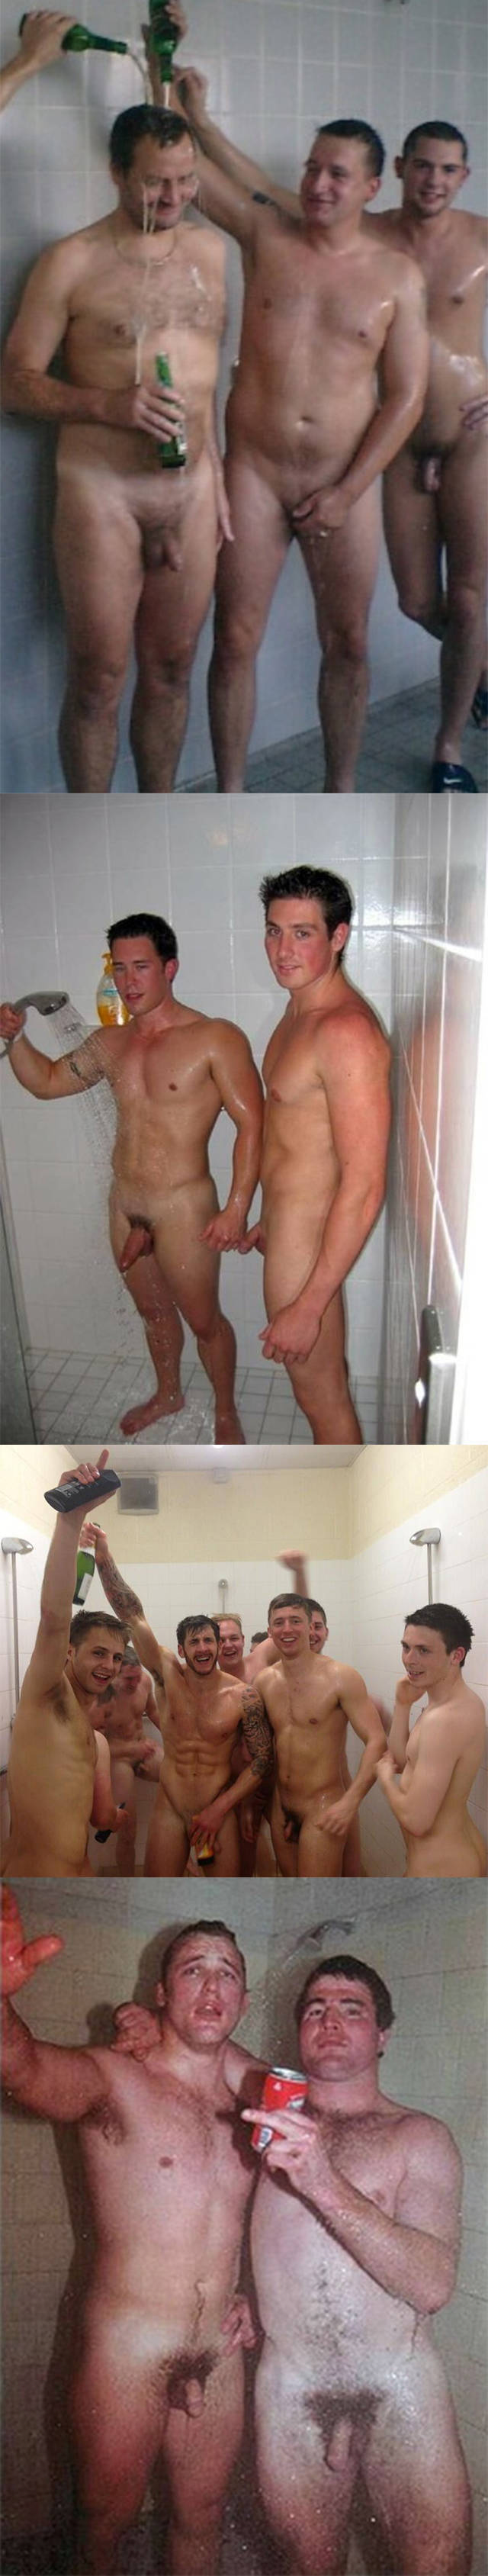 eric deman naked sportsmen celebrating shower